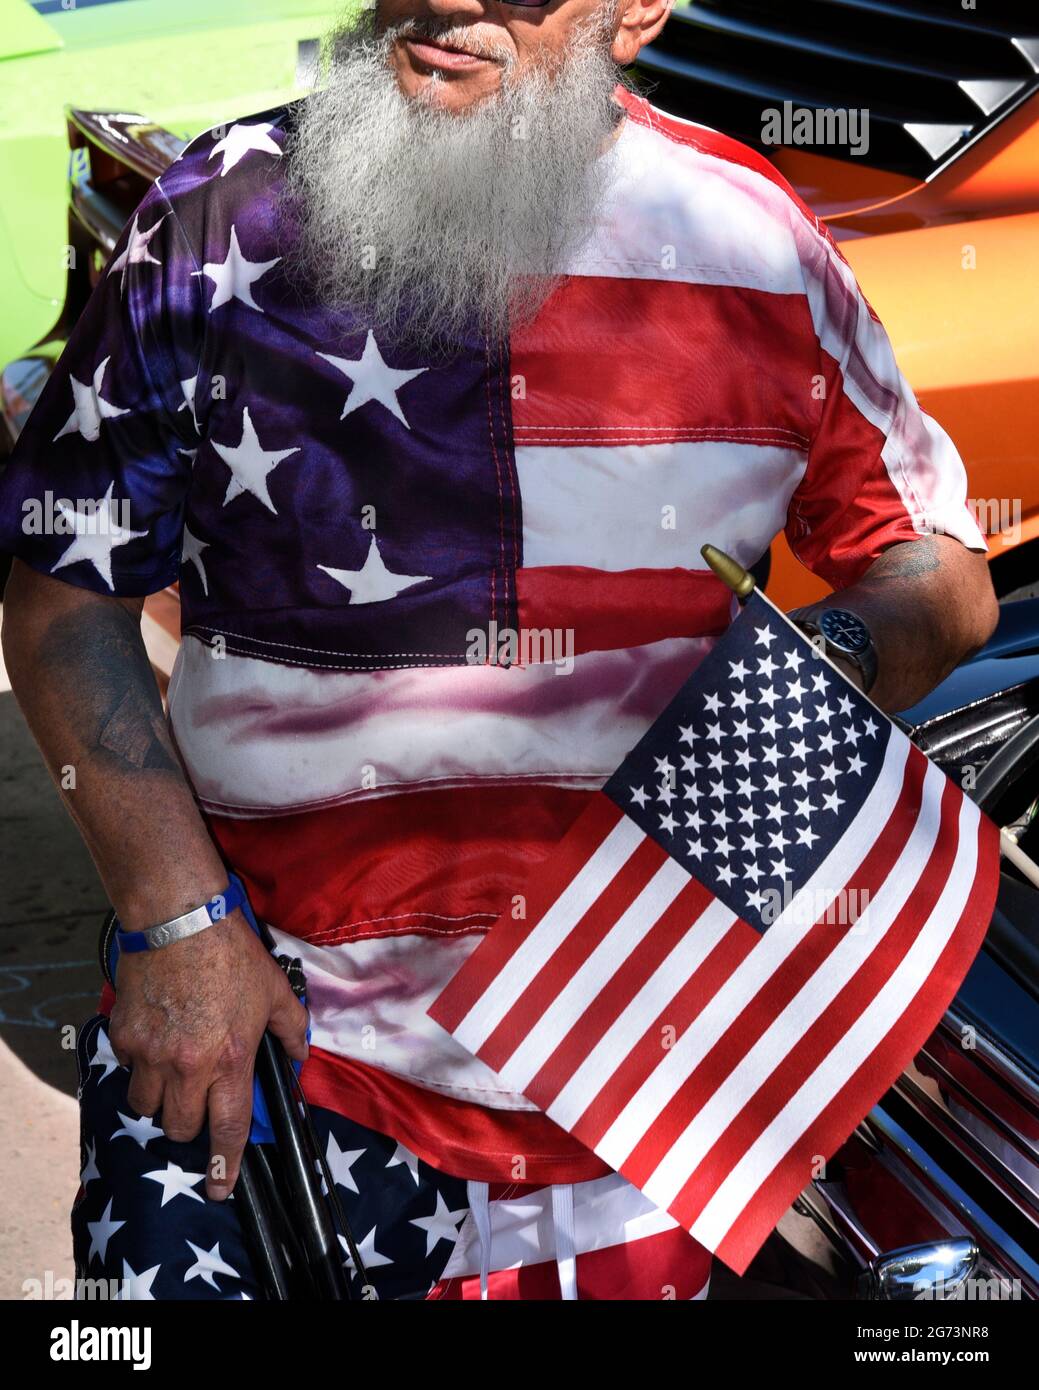 Ein Mann, der in den Farben und im Design der amerikanischen Flagge gekleidet ist, besucht eine Oldtimer-Show am 4. Juli in Santa Fe, New Mexico. Stockfoto